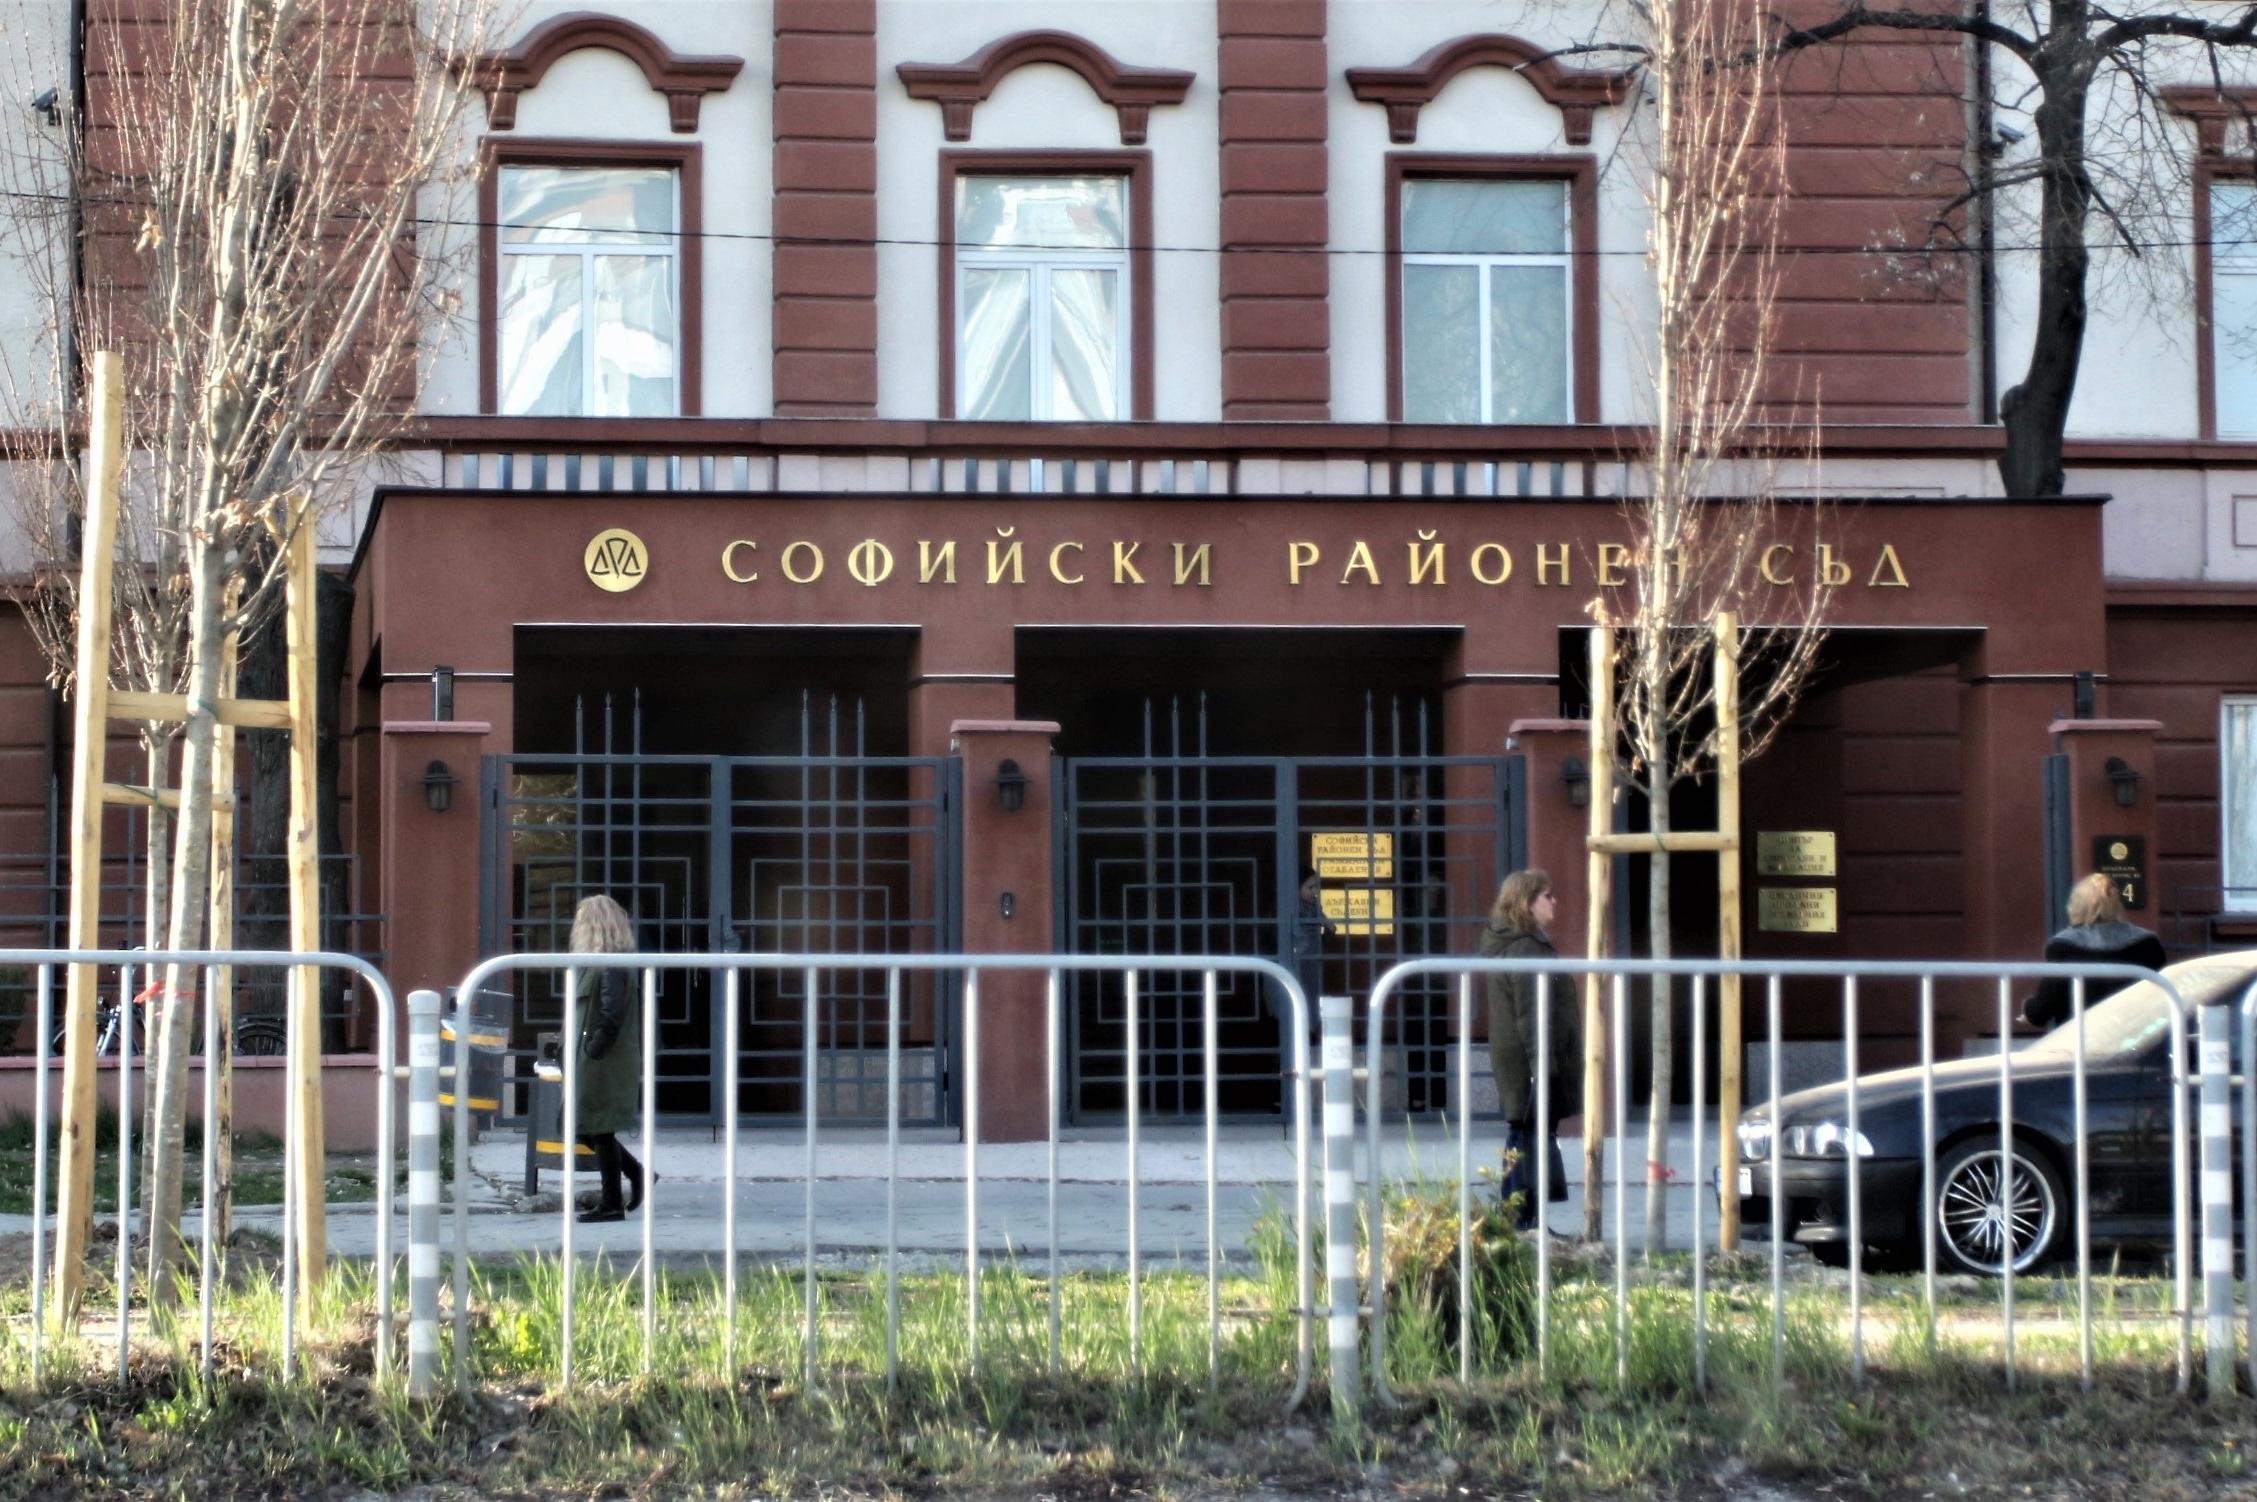 Софийска районна прокуратура предаде на съд мъж шофирал след употреба на ал